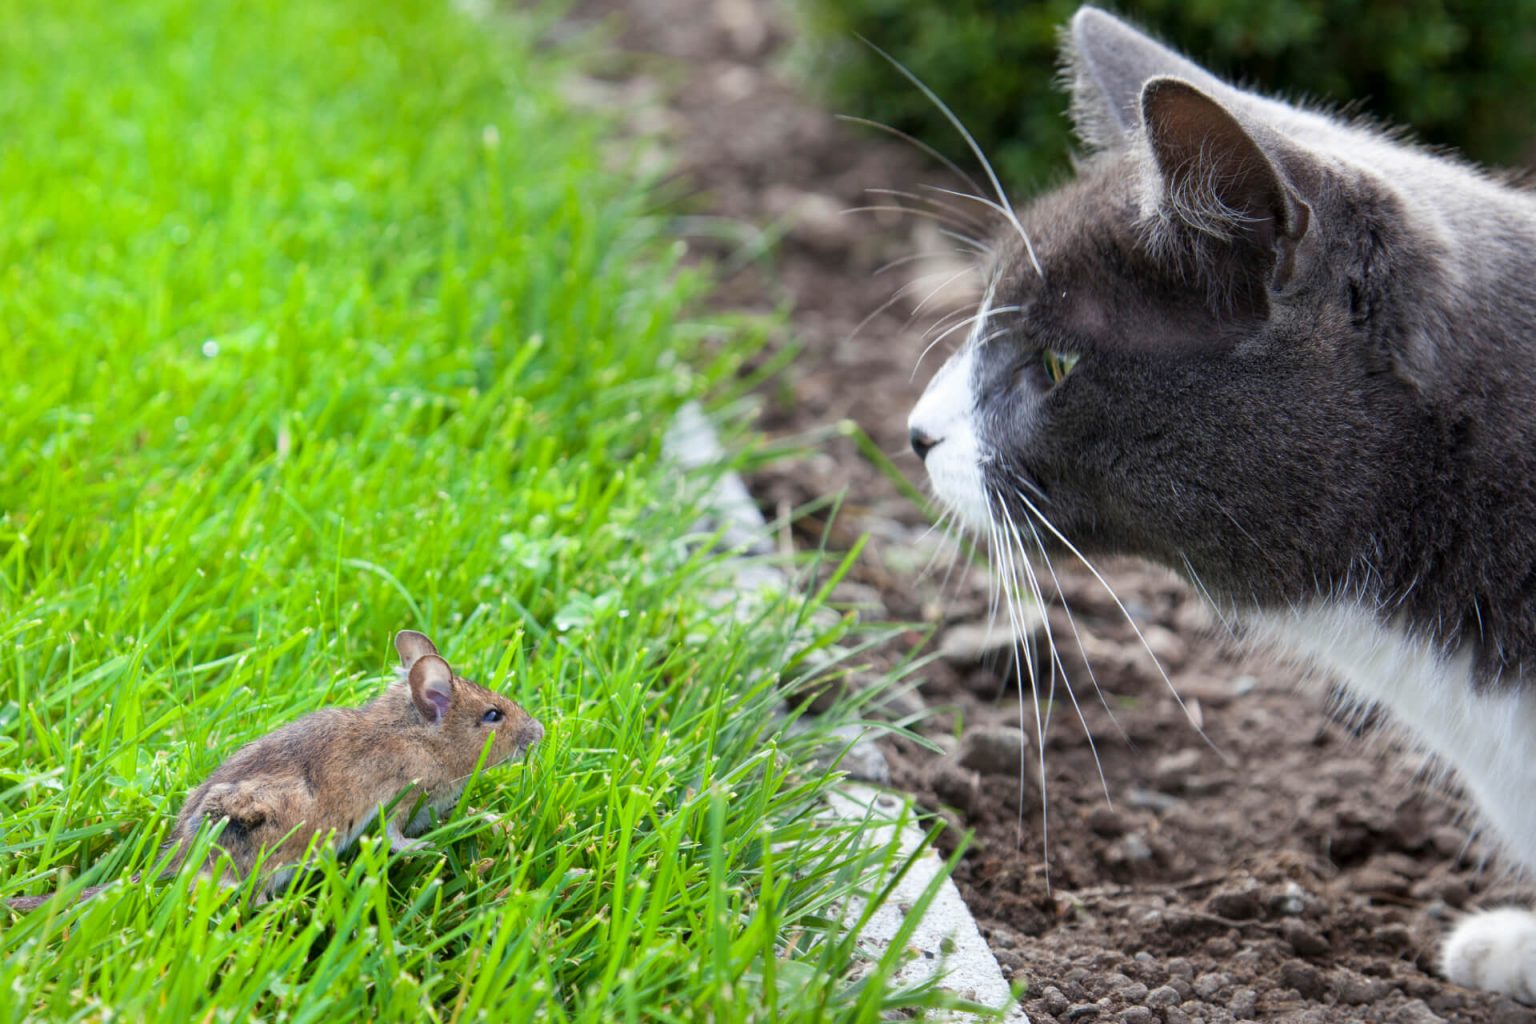 Kedi Fare Yer mi? Kediler Hamster Yer mi? ️ Miyavliyo